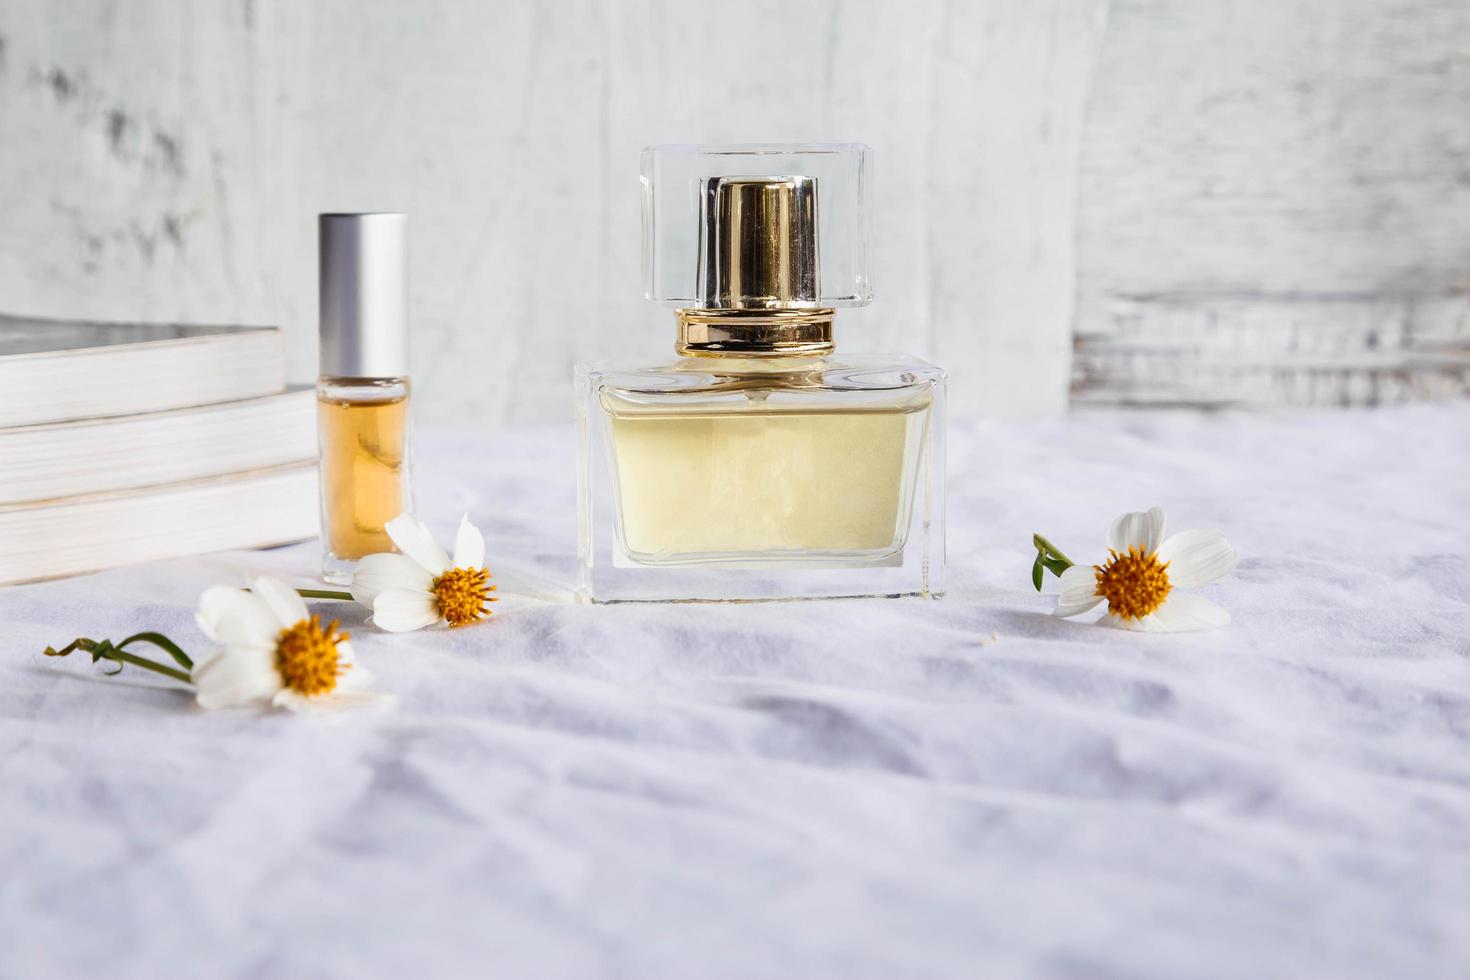 Frascos de perfume y perfume de oro sobre fondo blanco. foto